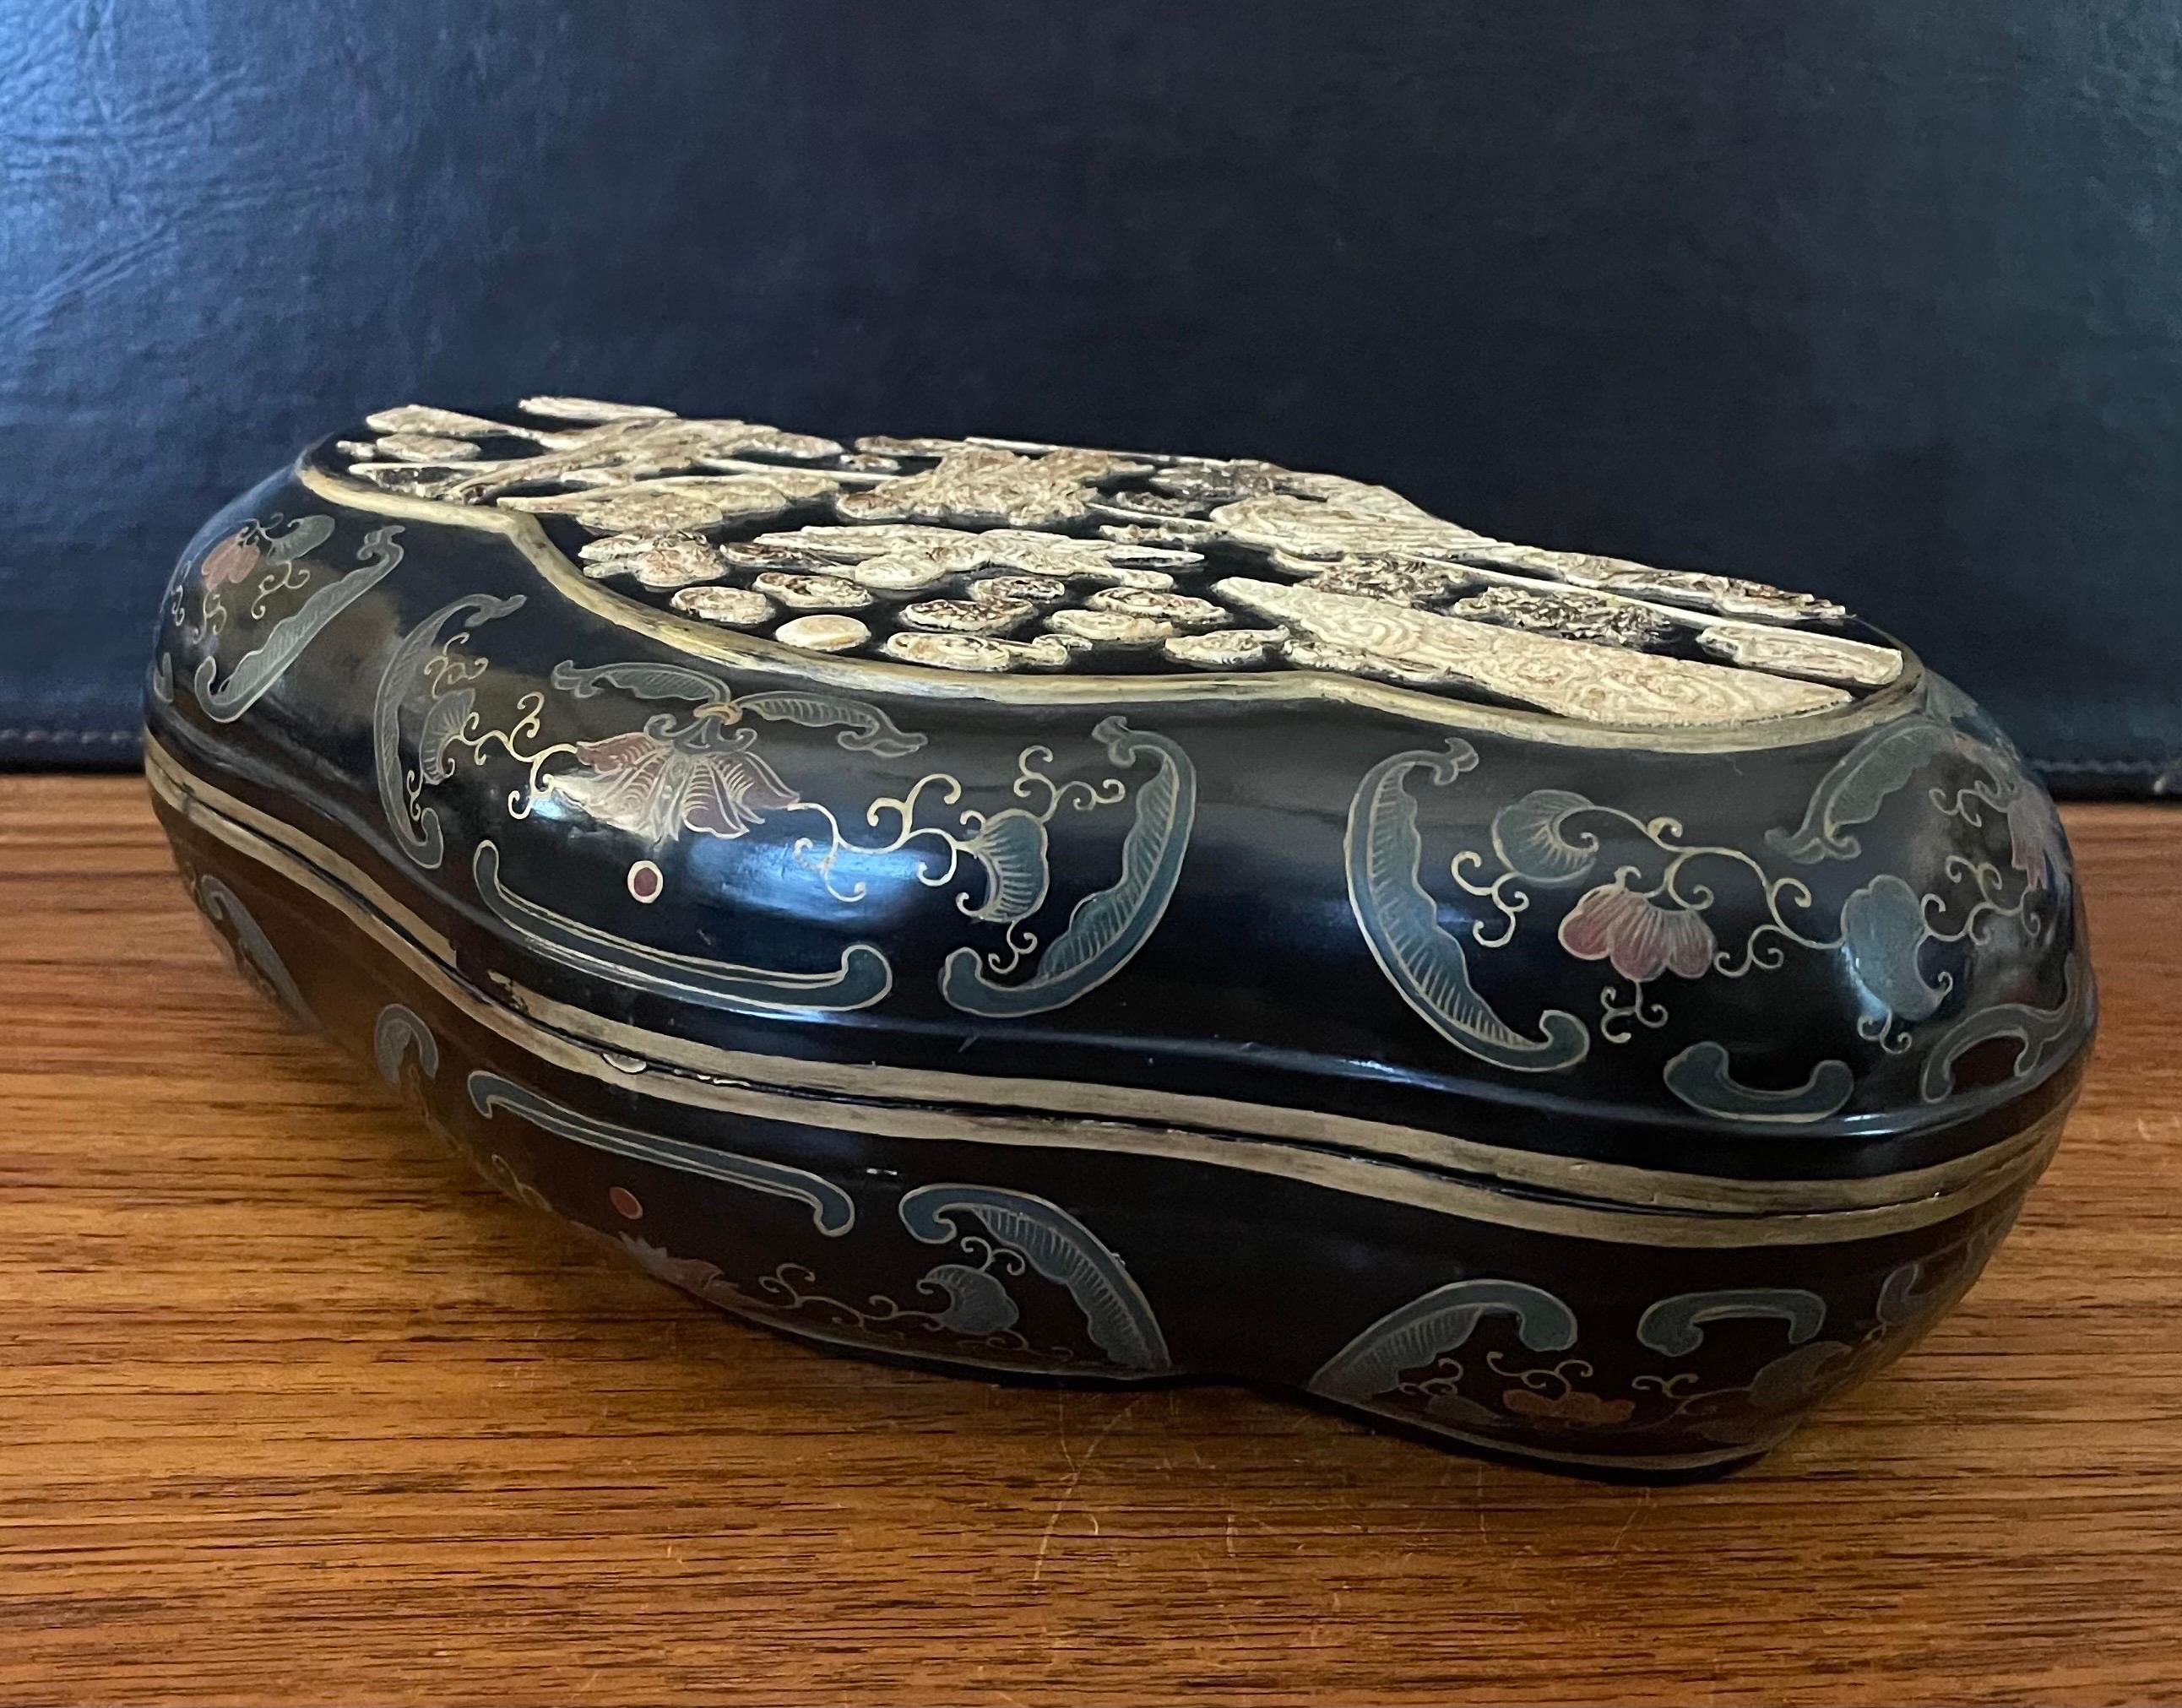 Magnifique boîte chinoise à couvercle en laque noire peinte à la main, vers les années 1940. La boîte artisanale mesure 13,5 